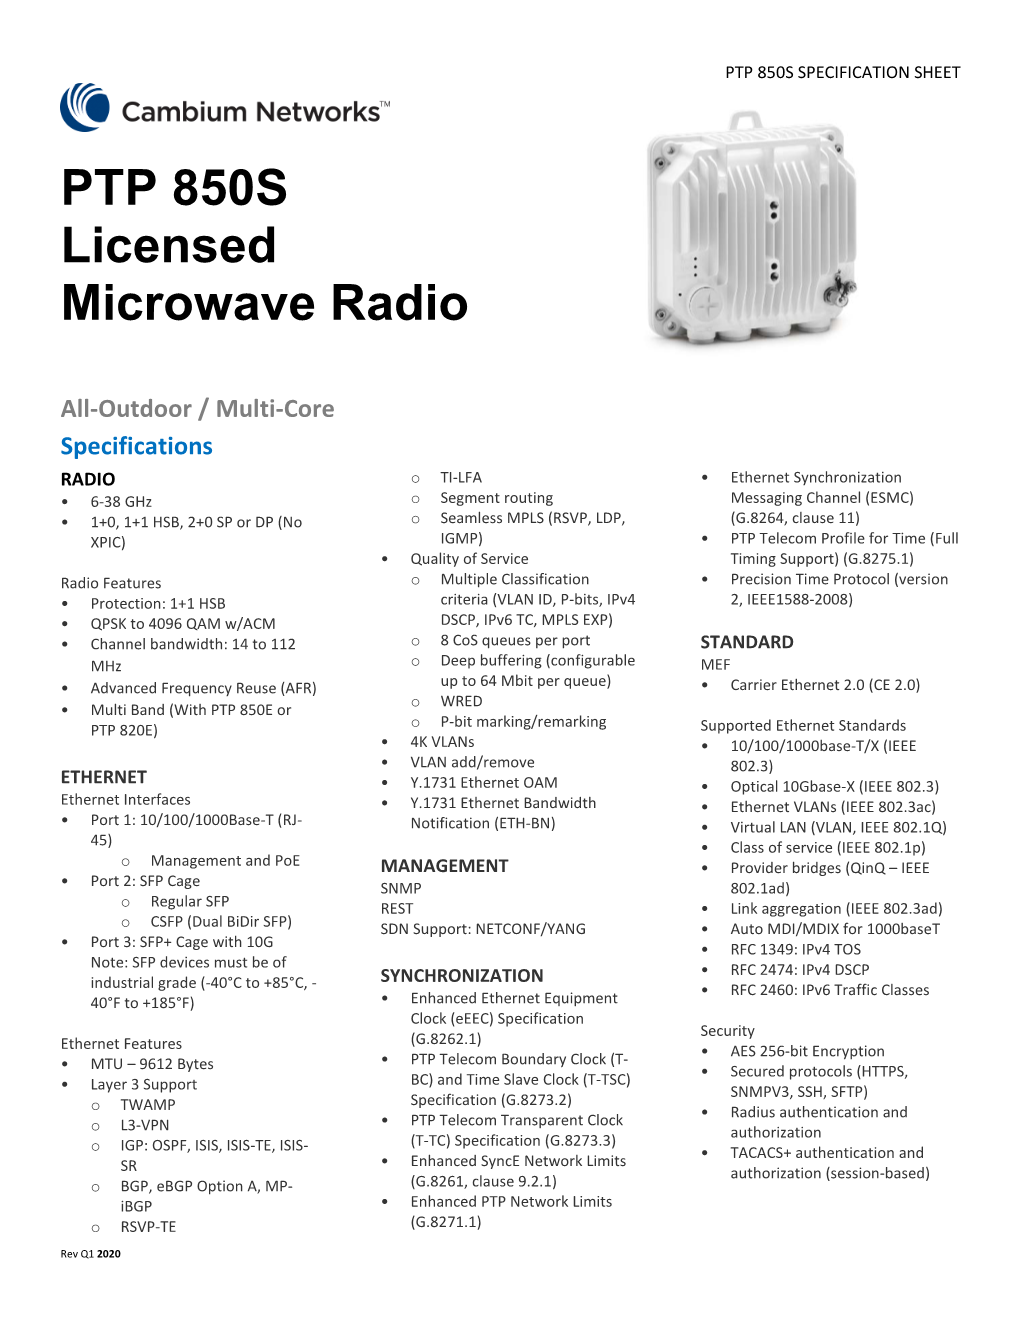 Ptp-850S-Q12020